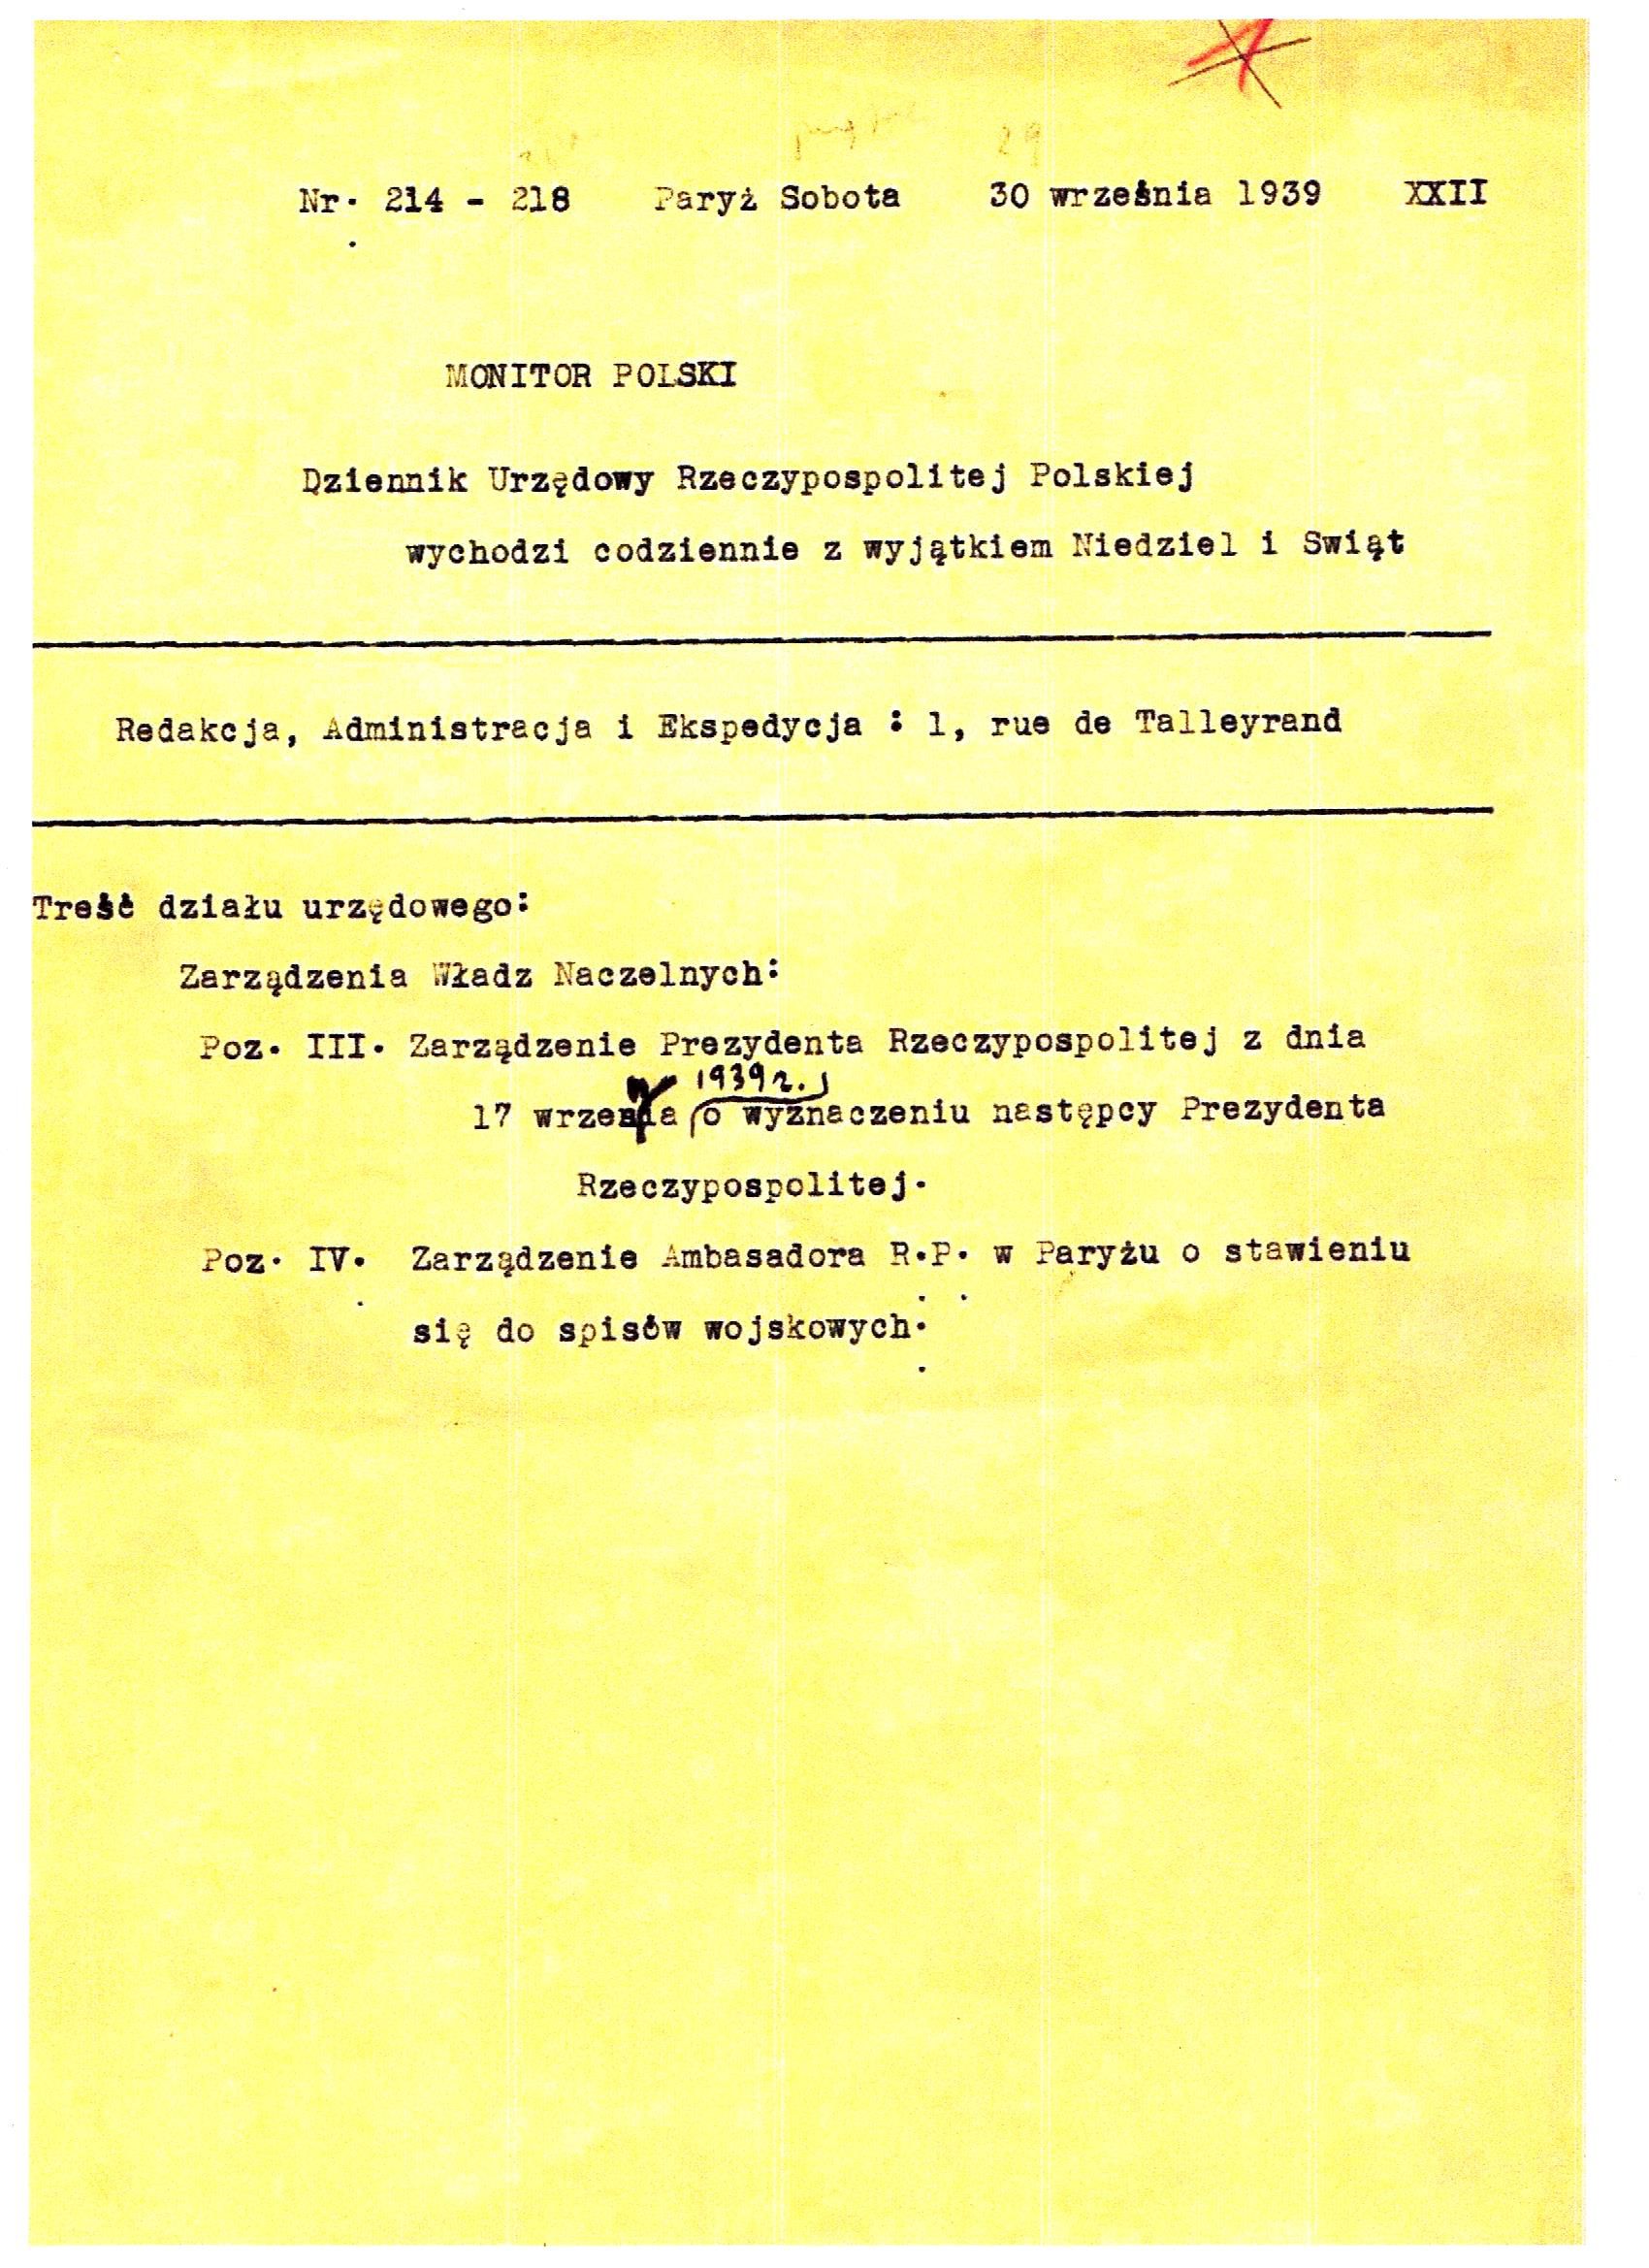 Monitor_Polski_30_wrzesień_1939-1.jpg